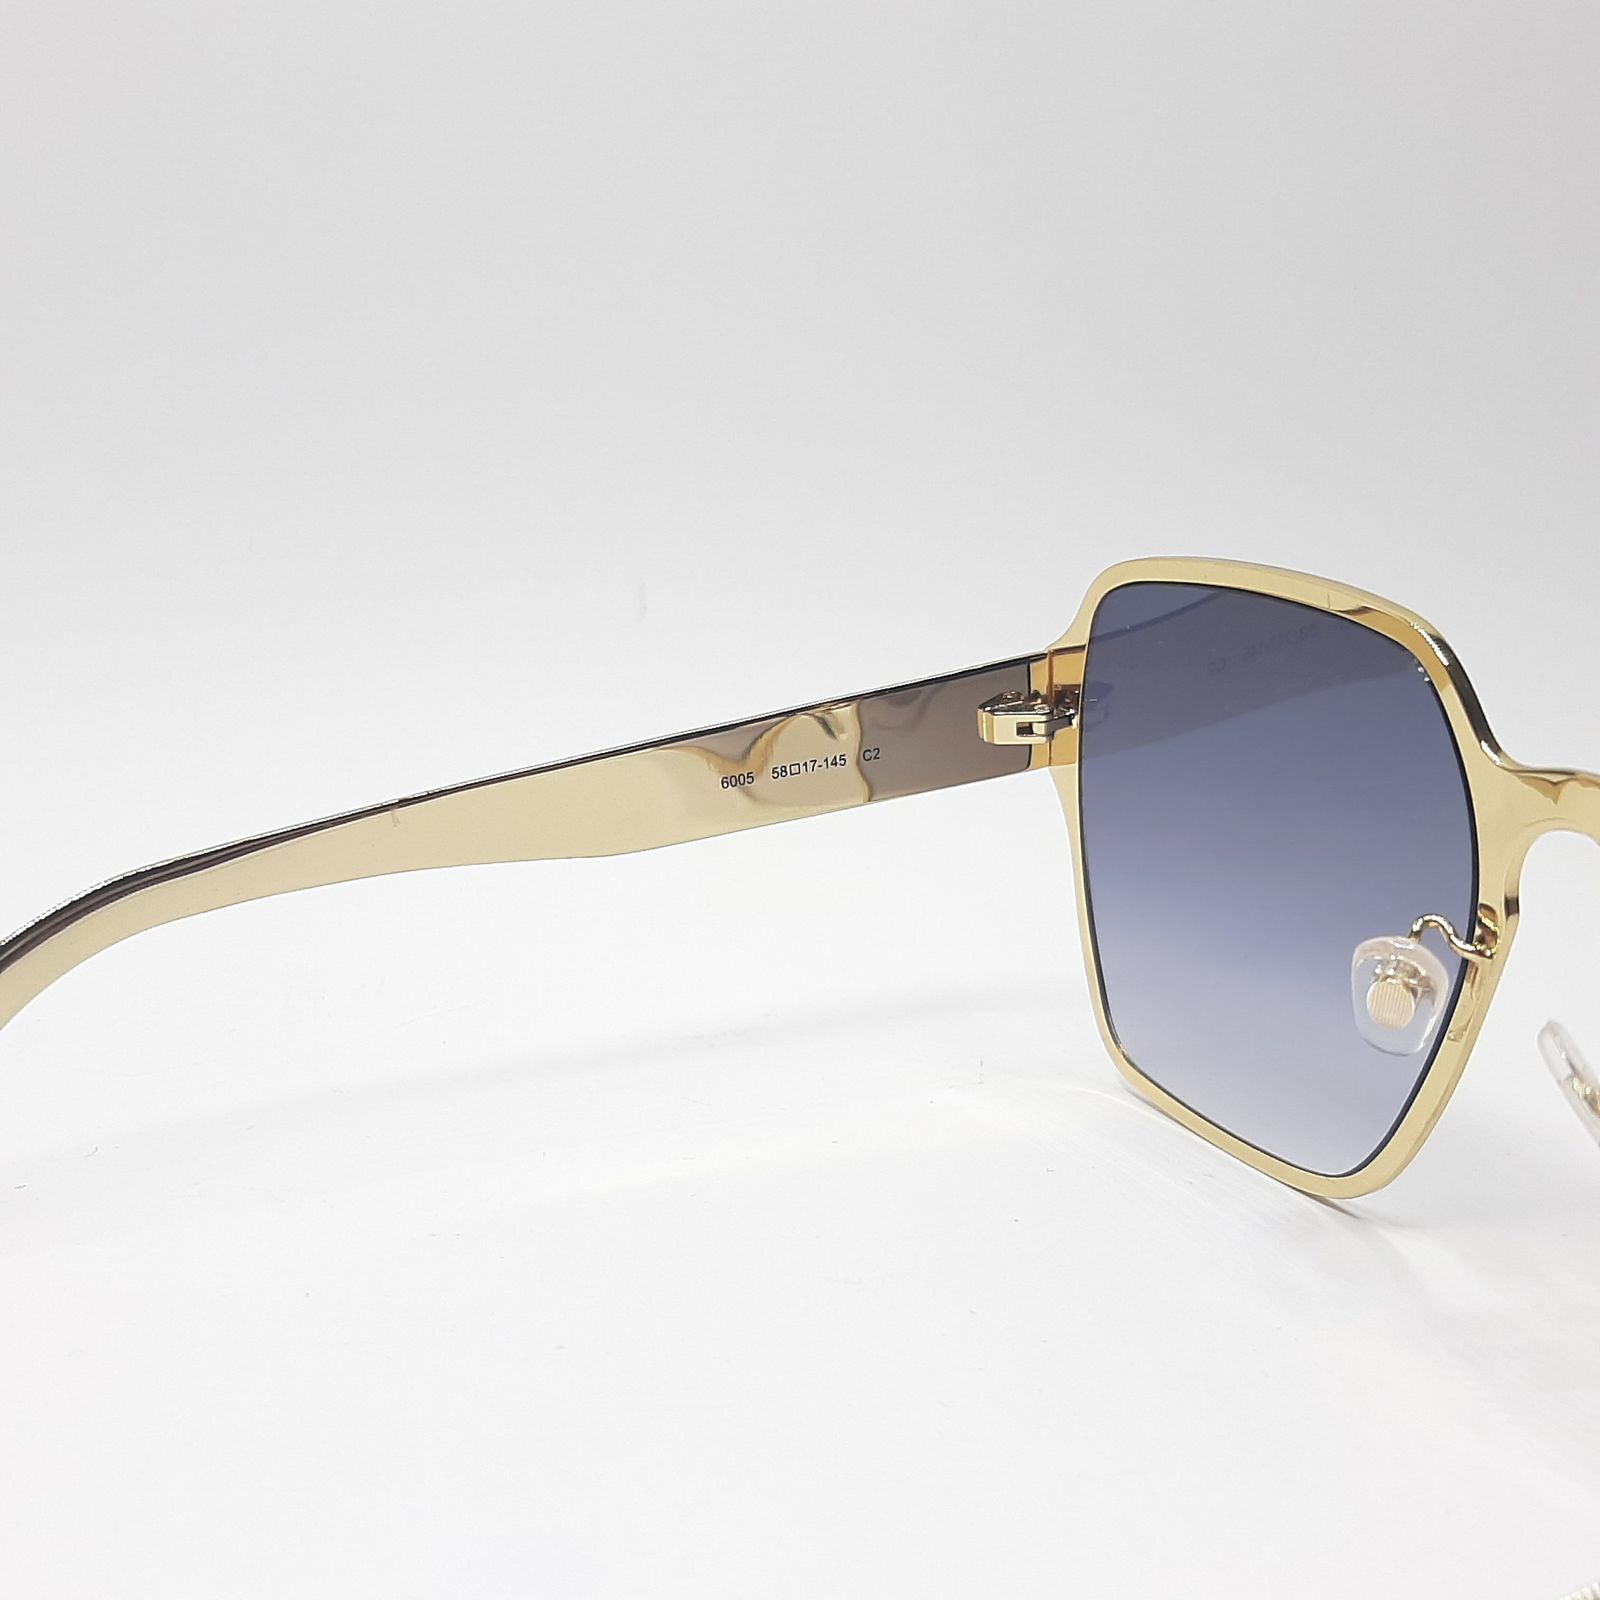 عینک آفتابی فندی مدل FD6005c2 -  - 7